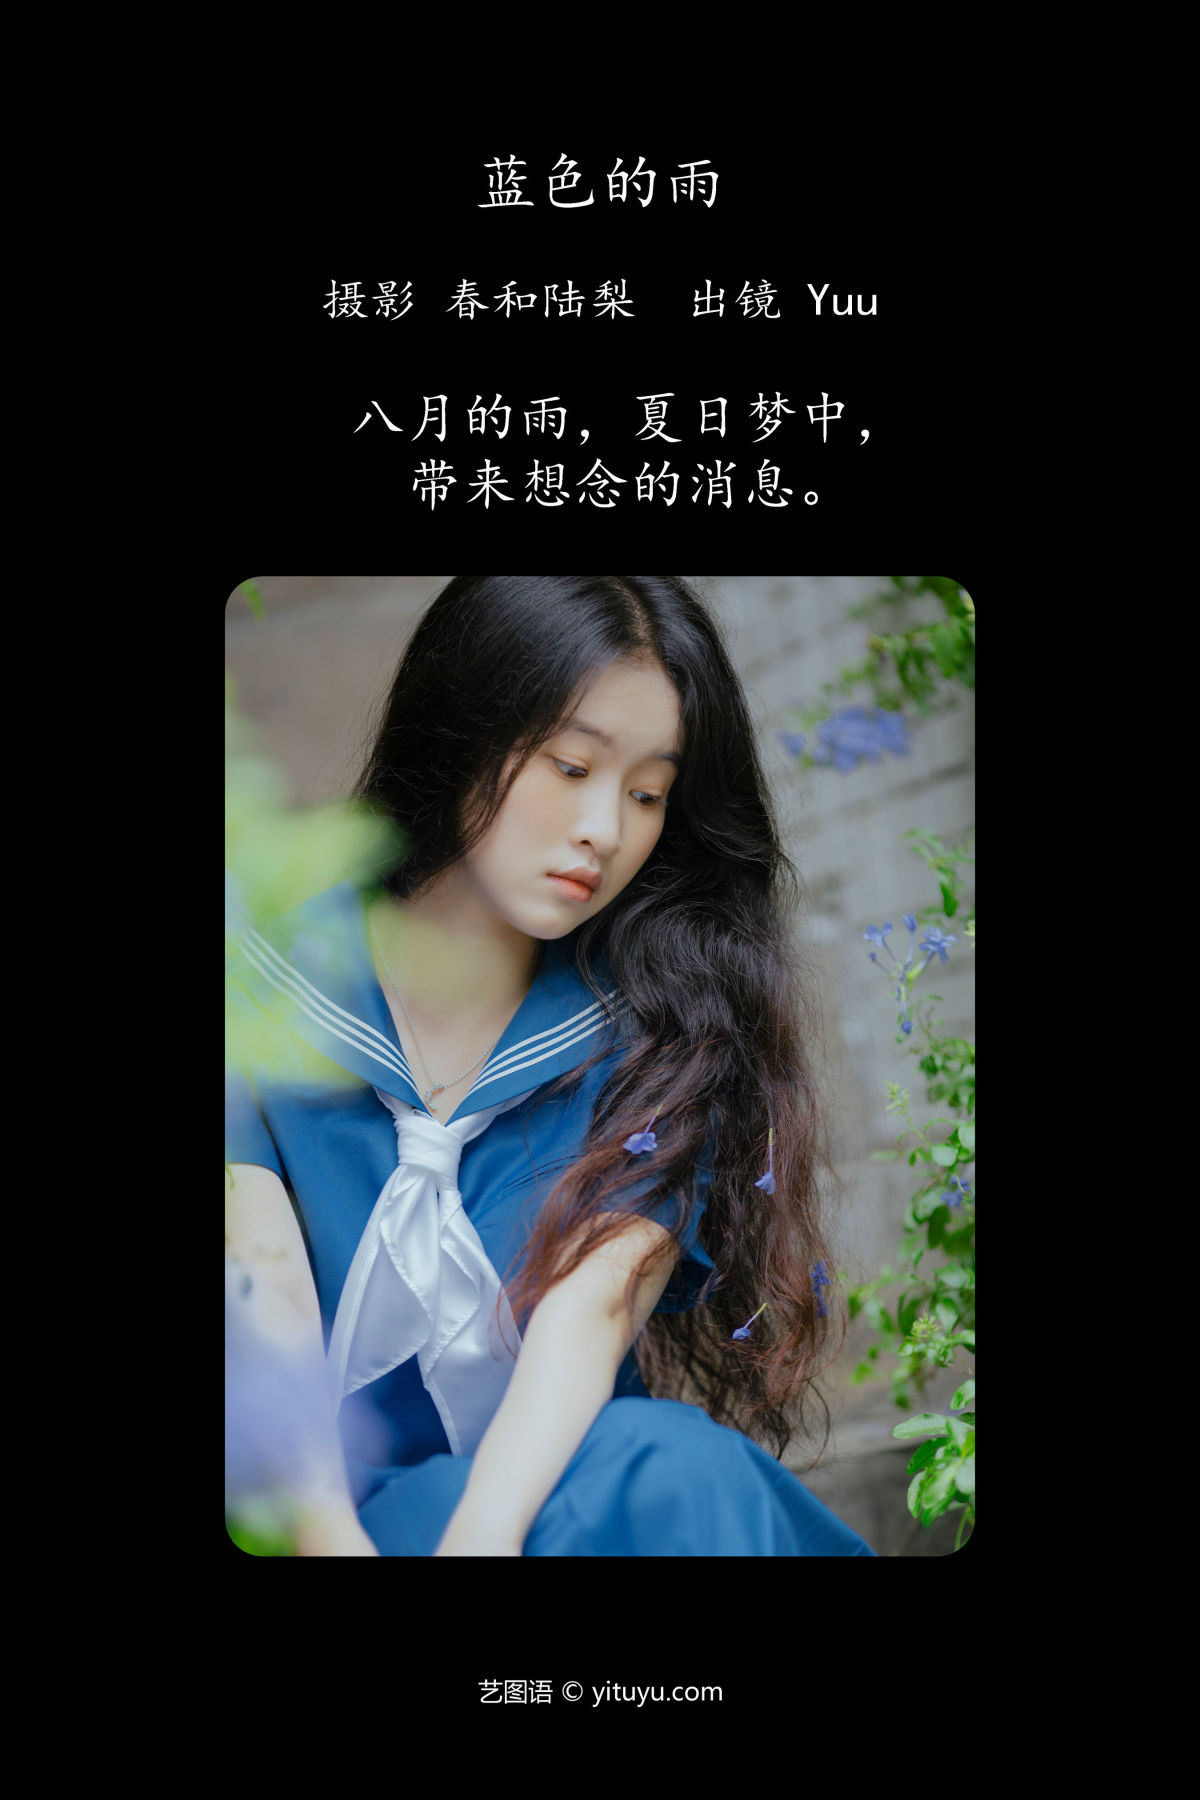 春和陆梨_Yuu《蓝色的雨》美图作品图片2